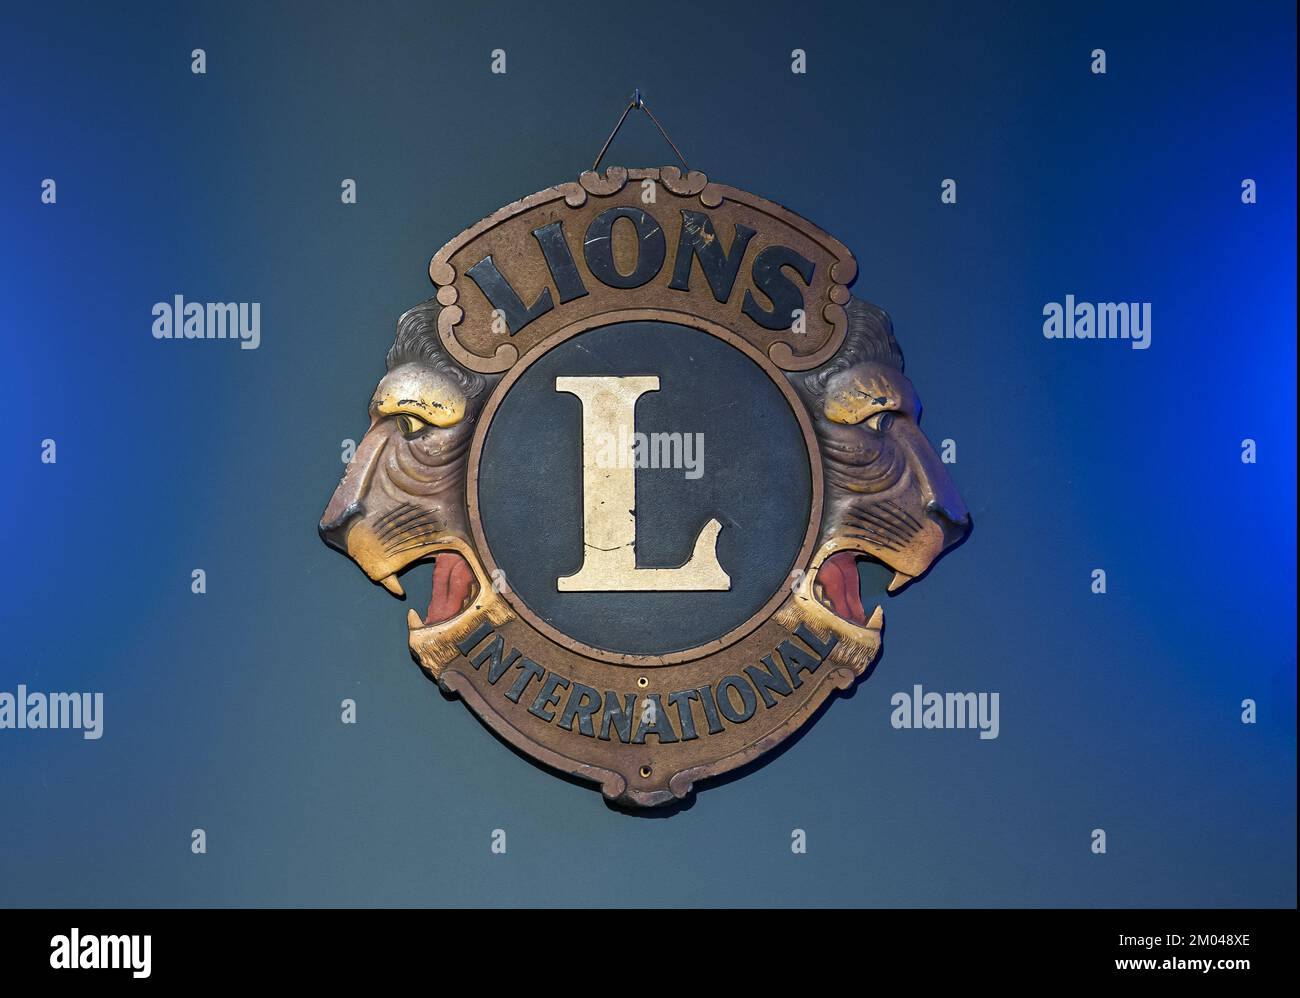 Insignia retro con emblema para el club Lions International sobre fondo azul brillante Foto de stock